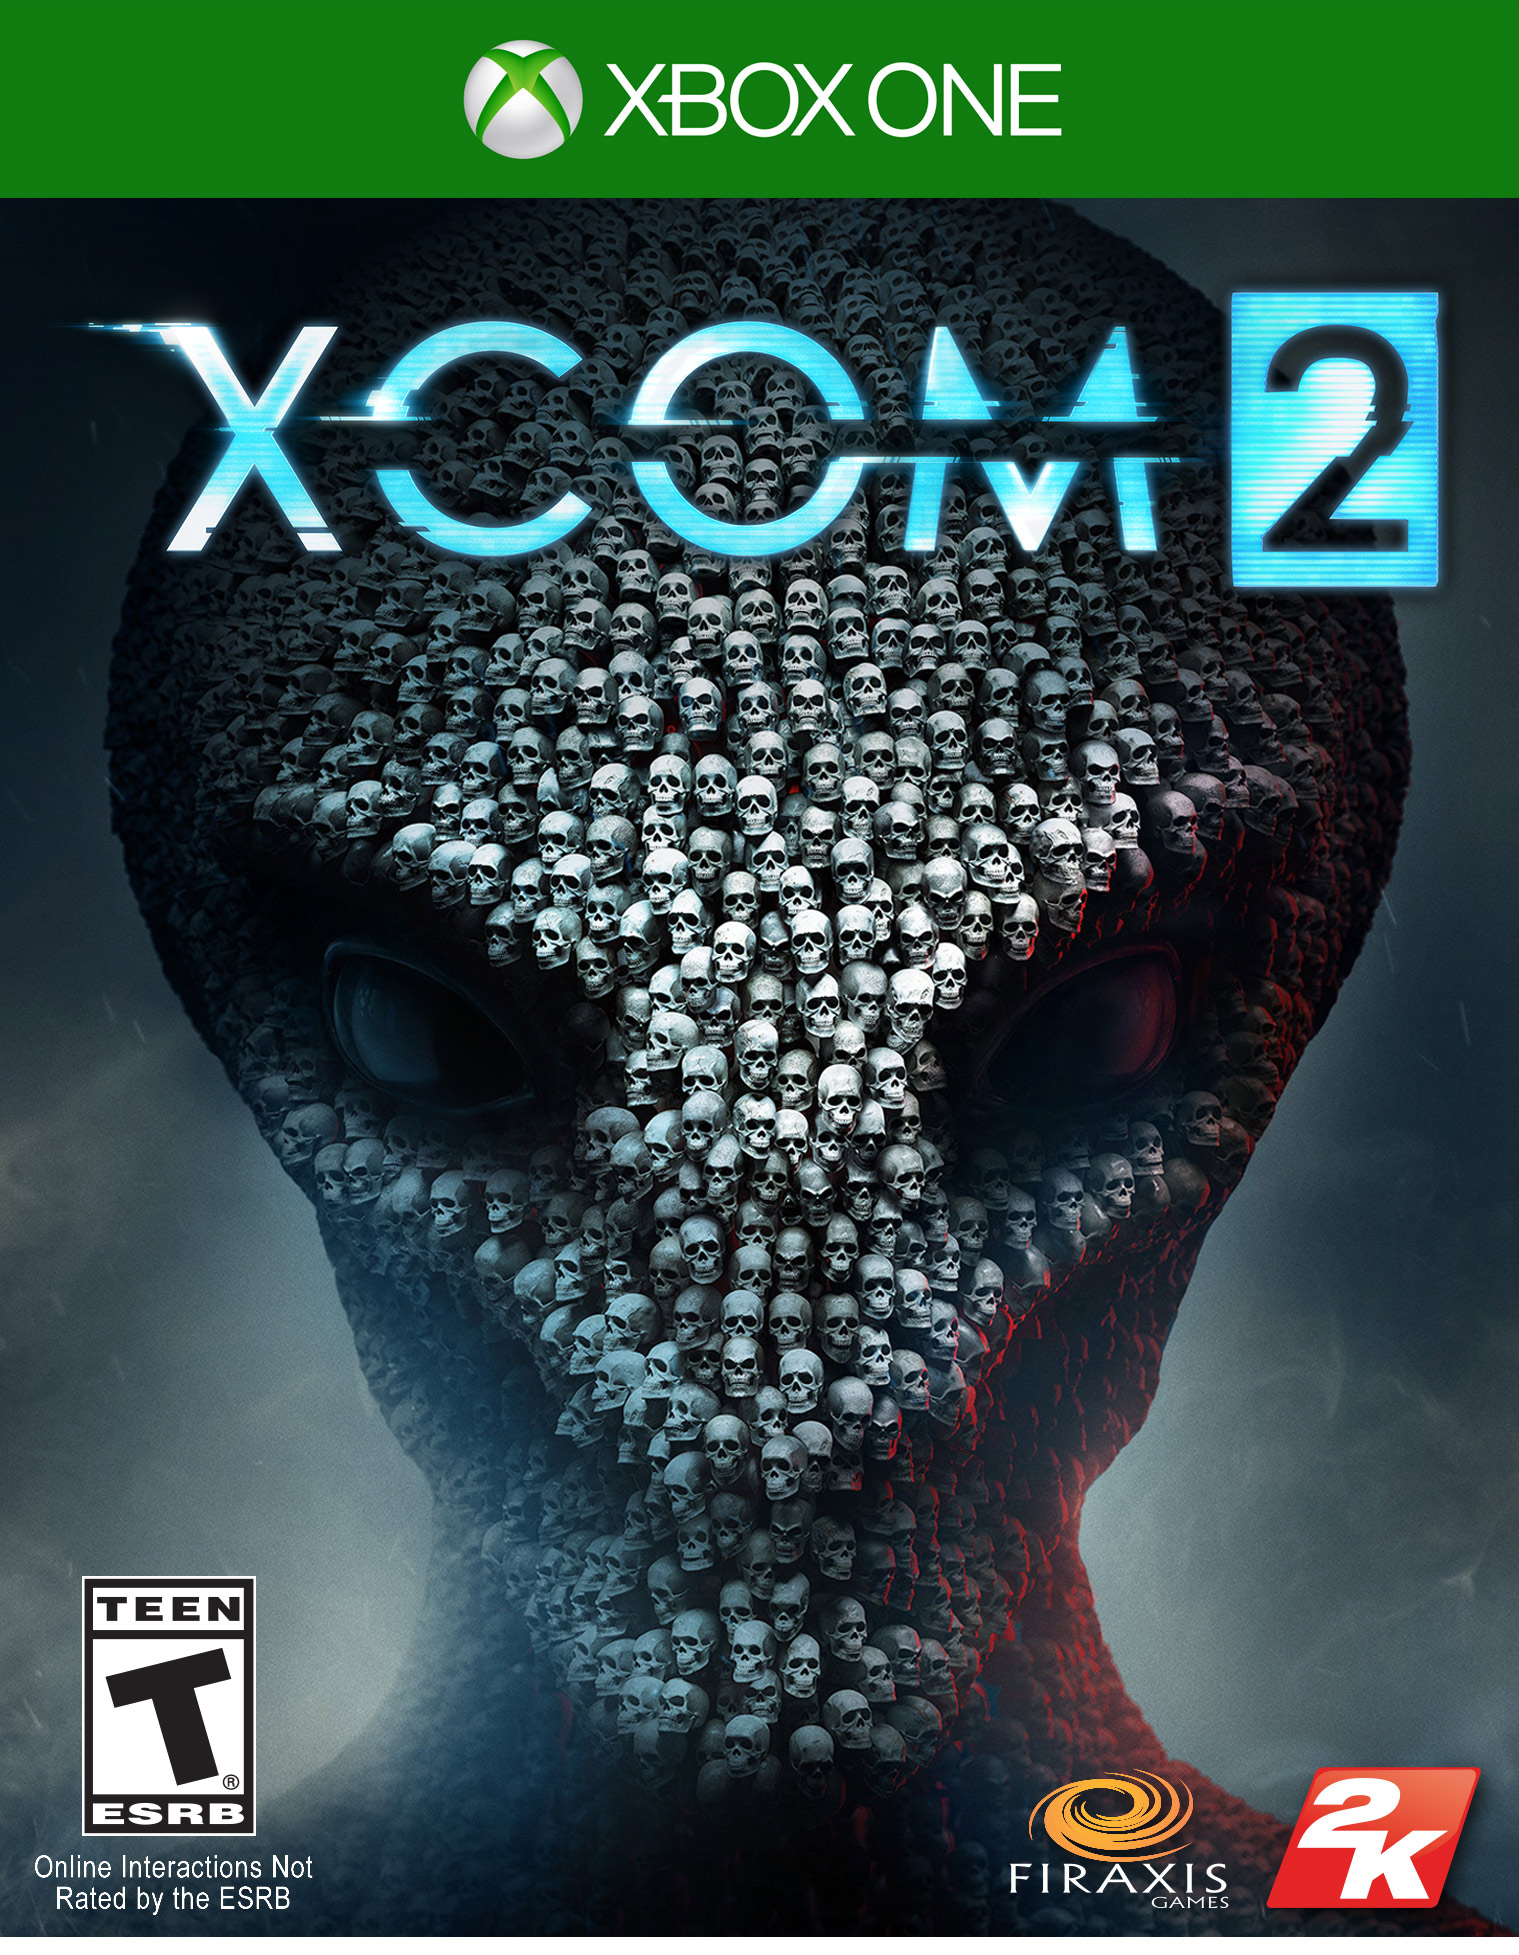 XCOM 2 Xbox One